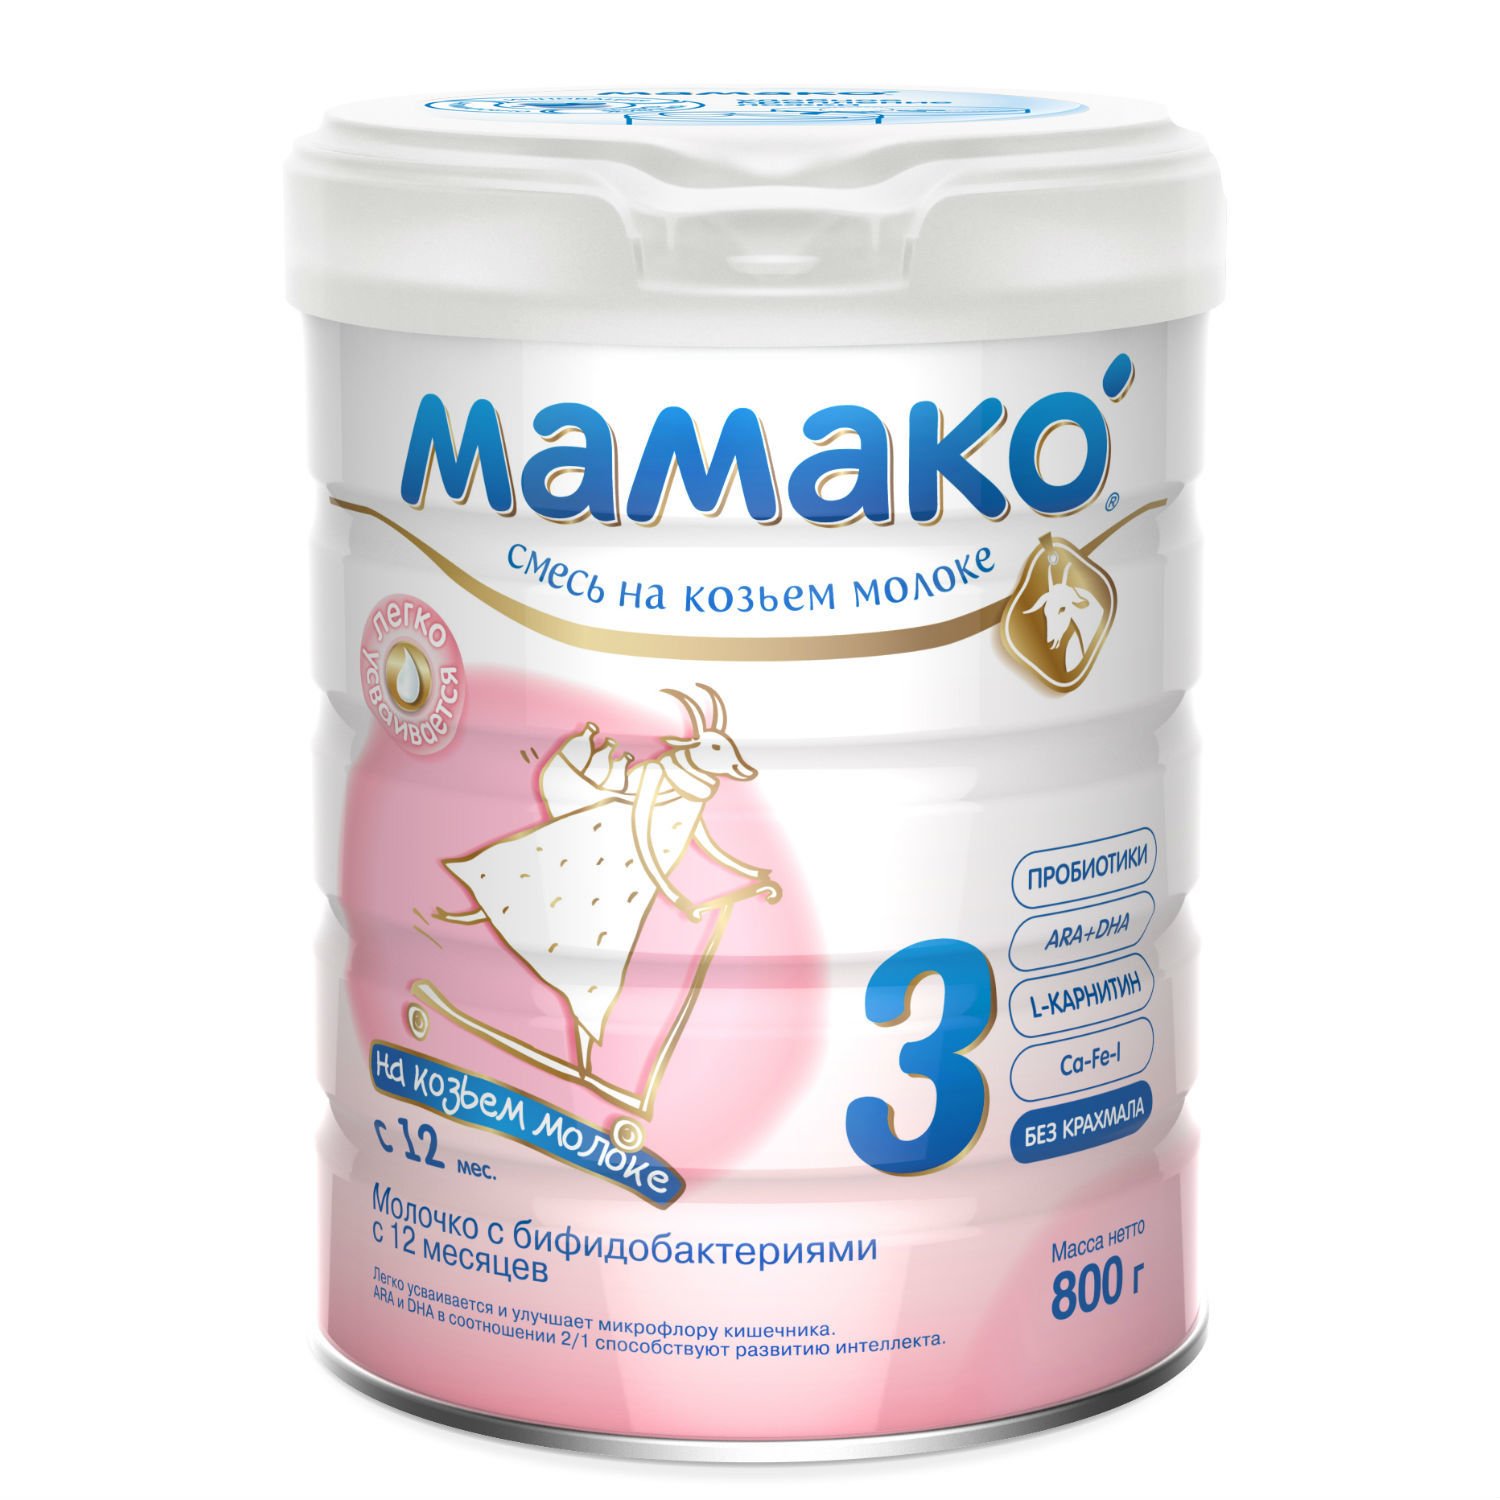 Напиток Мамако сухой козье молоко 800г с 12месяцев  по цене 799 .